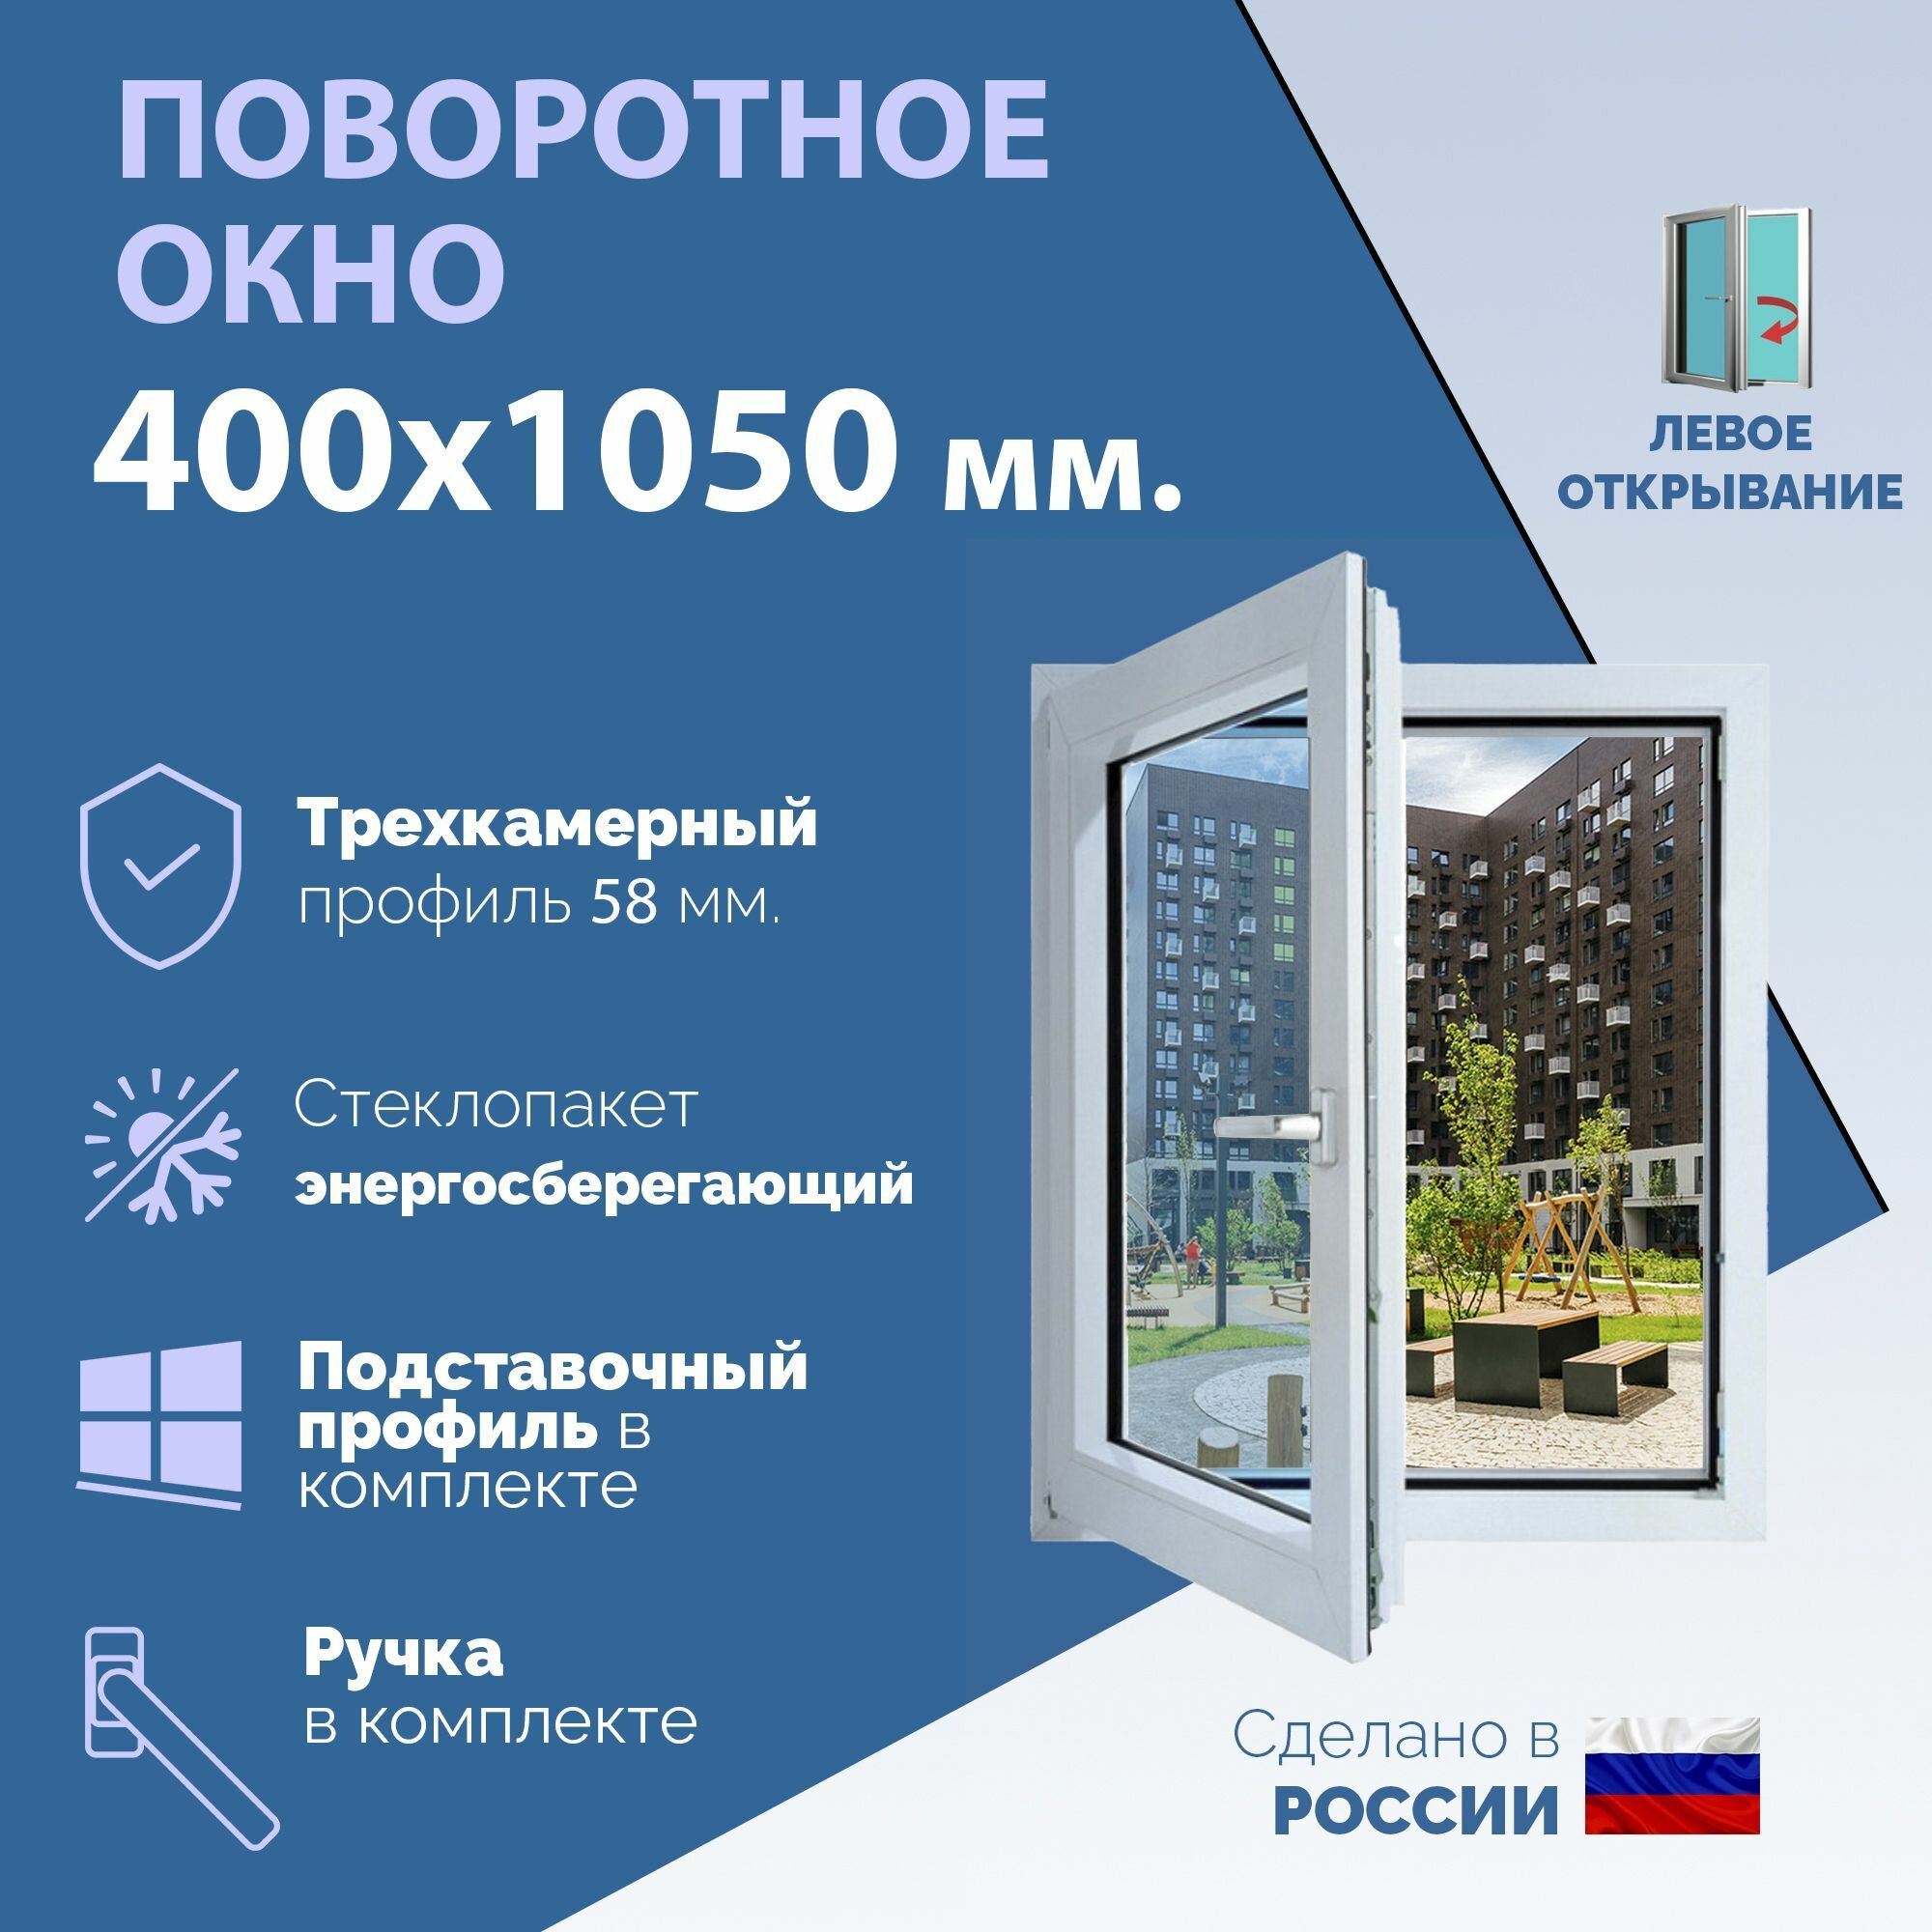 Поворотное ПВХ окно левое (ШхВ) 400х1050 мм. (40х105см.) Экологичный профиль KRAUSS - 58 мм. Энергосберегающий стеклопакет в 2 стекла - 24 мм.